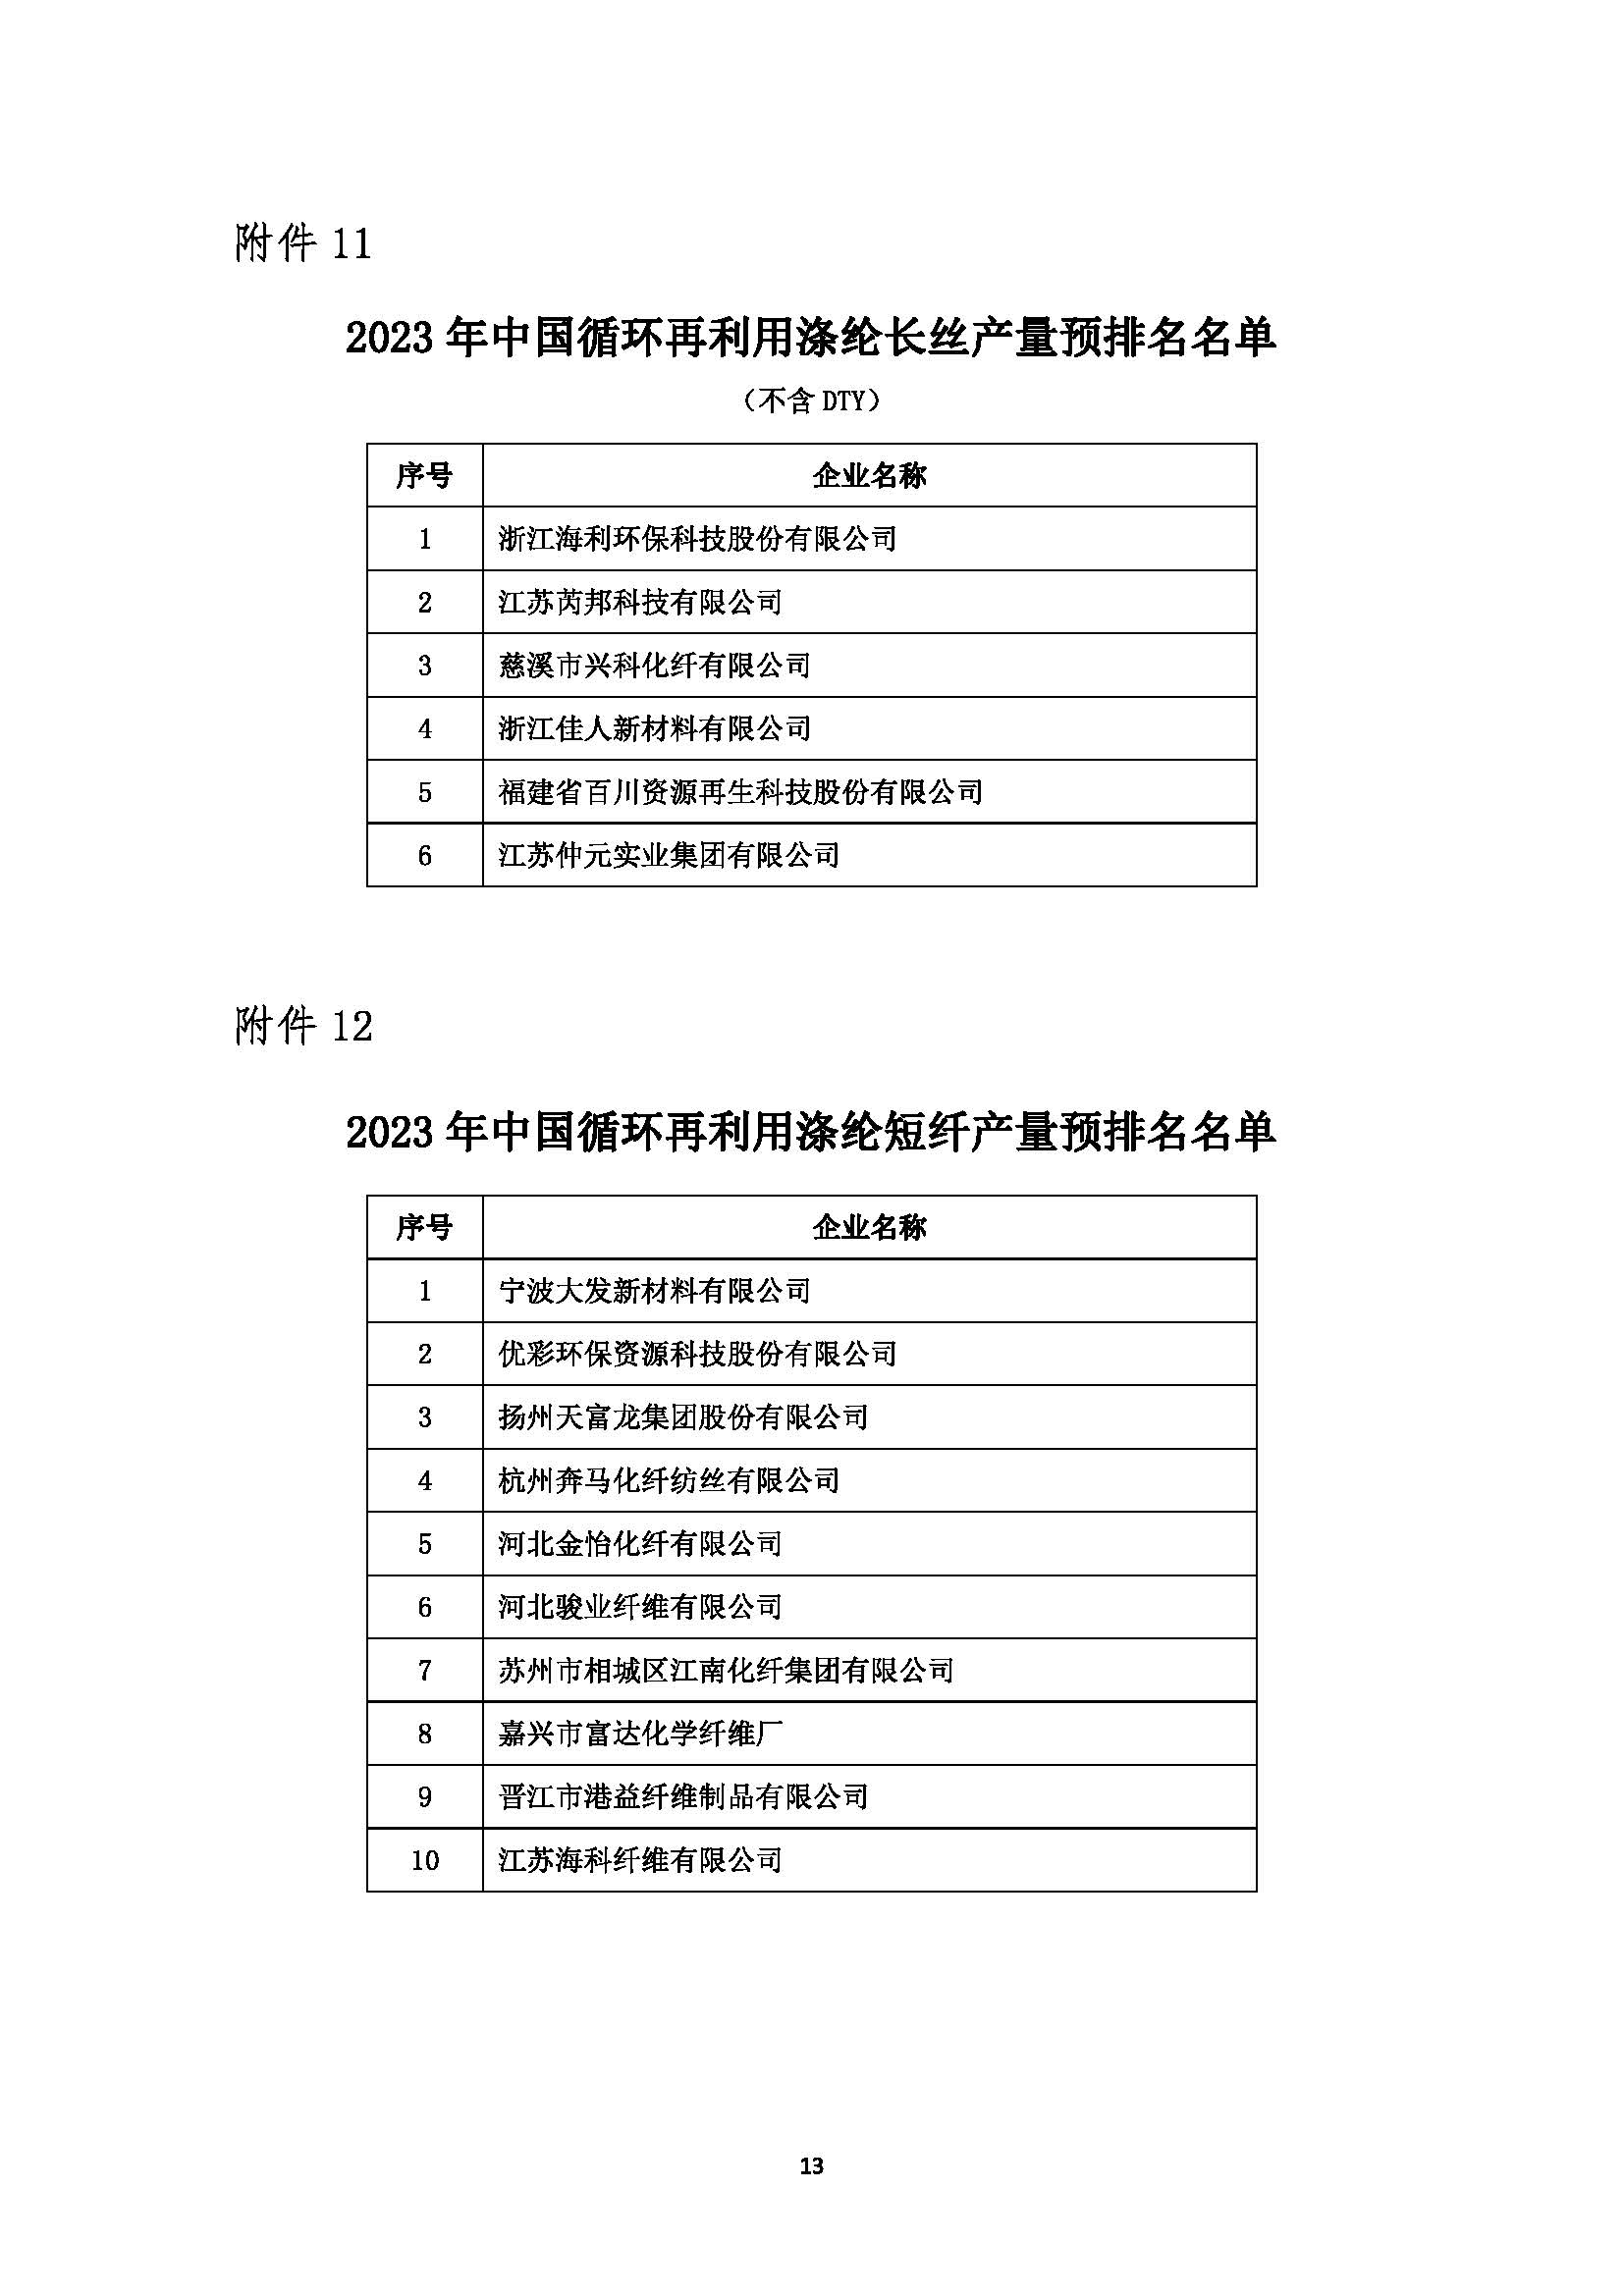 关于发布2023年中国化纤行业产量预排名名单及启动正式排名工作的通知20240227(1)_页面_13.jpg